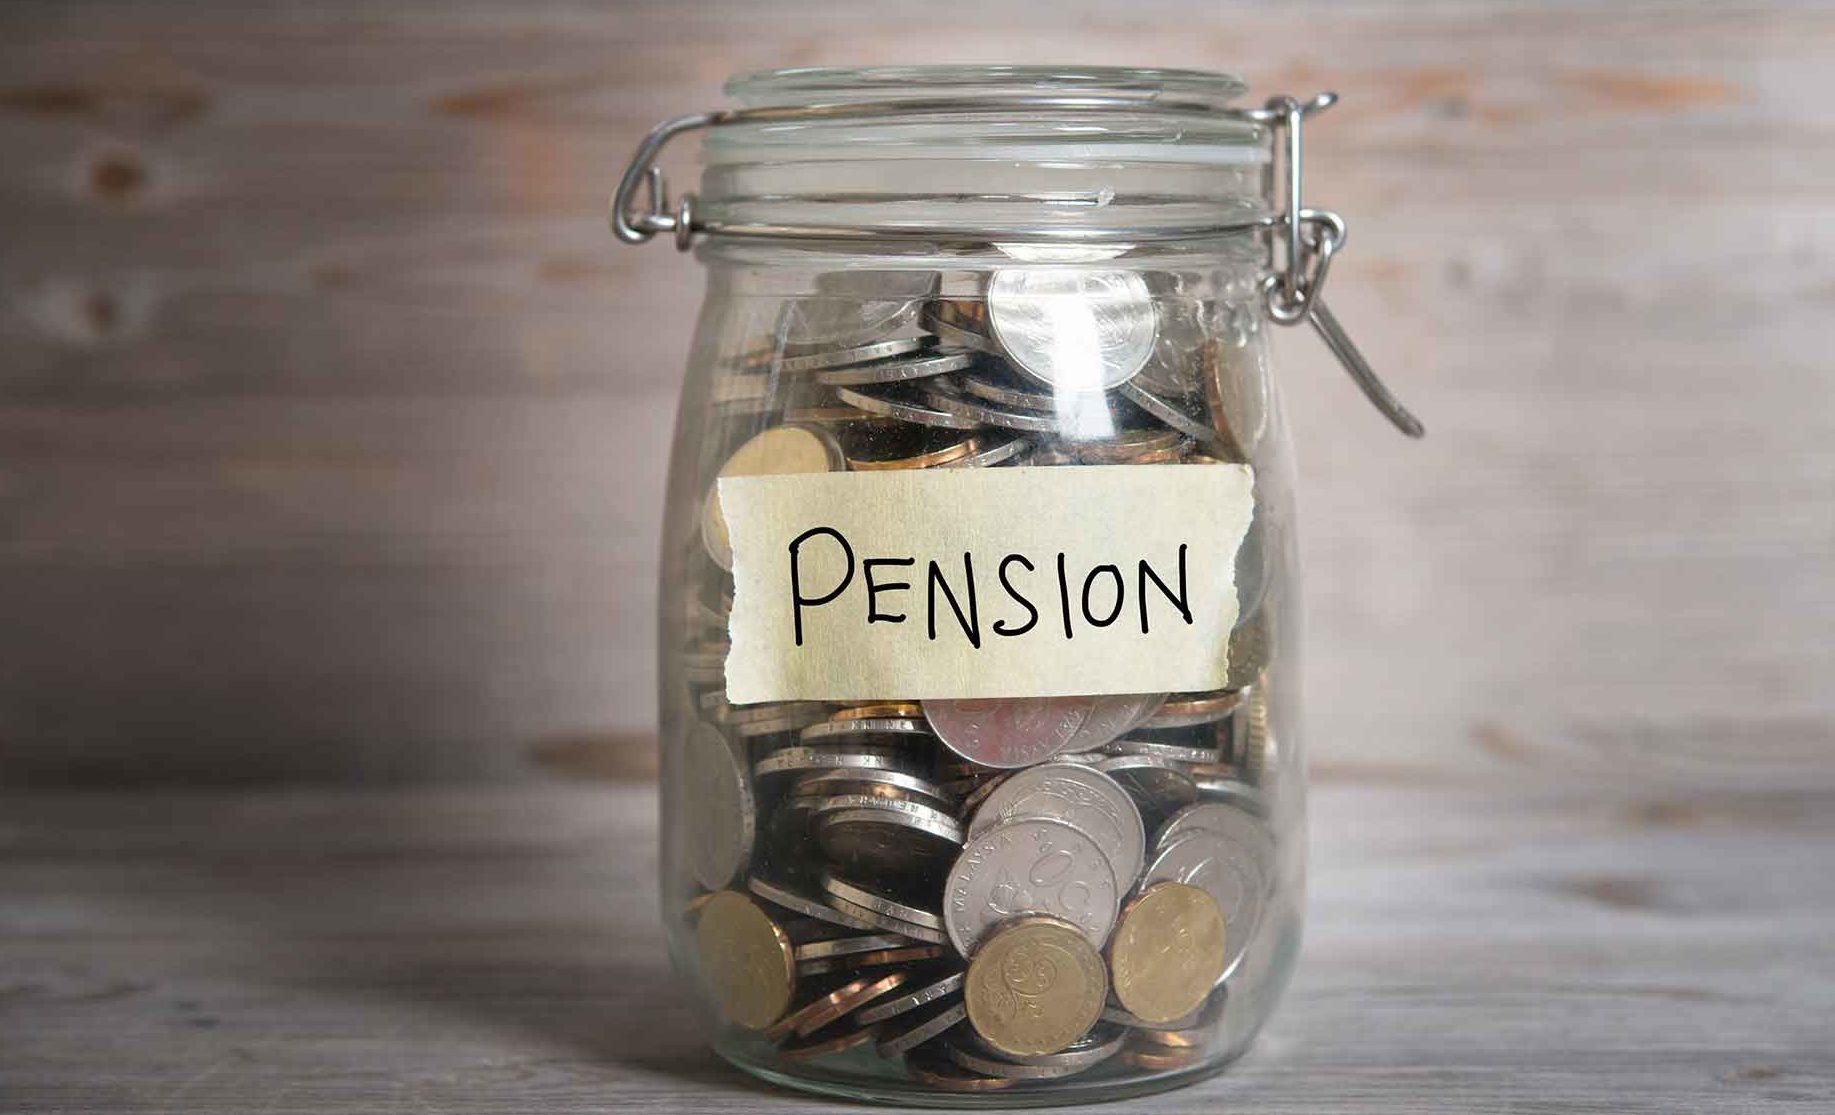 Practice Plan is hosting an NHS pension webinar